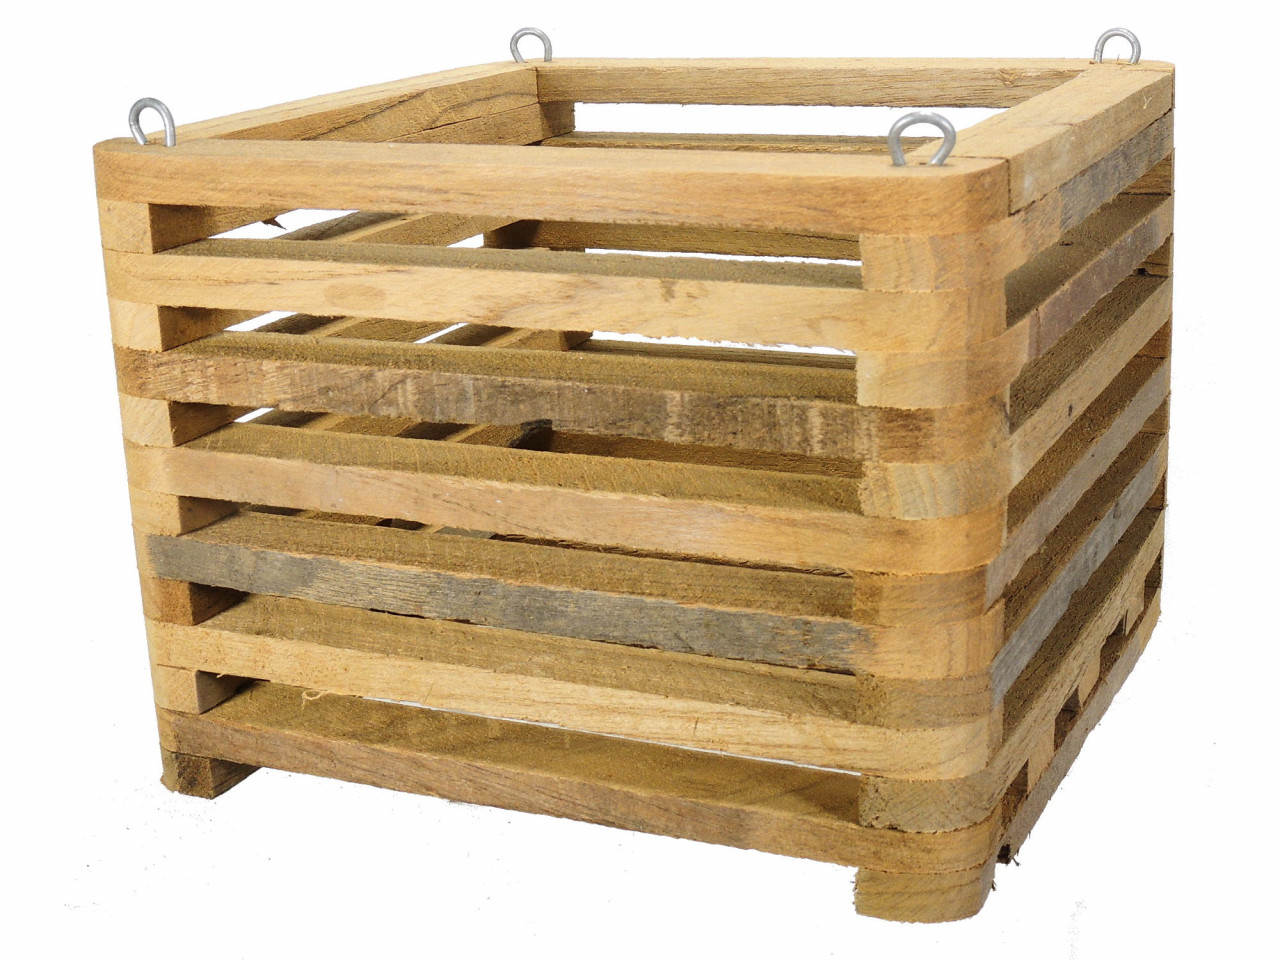 wooden basket ser. 1 - 175